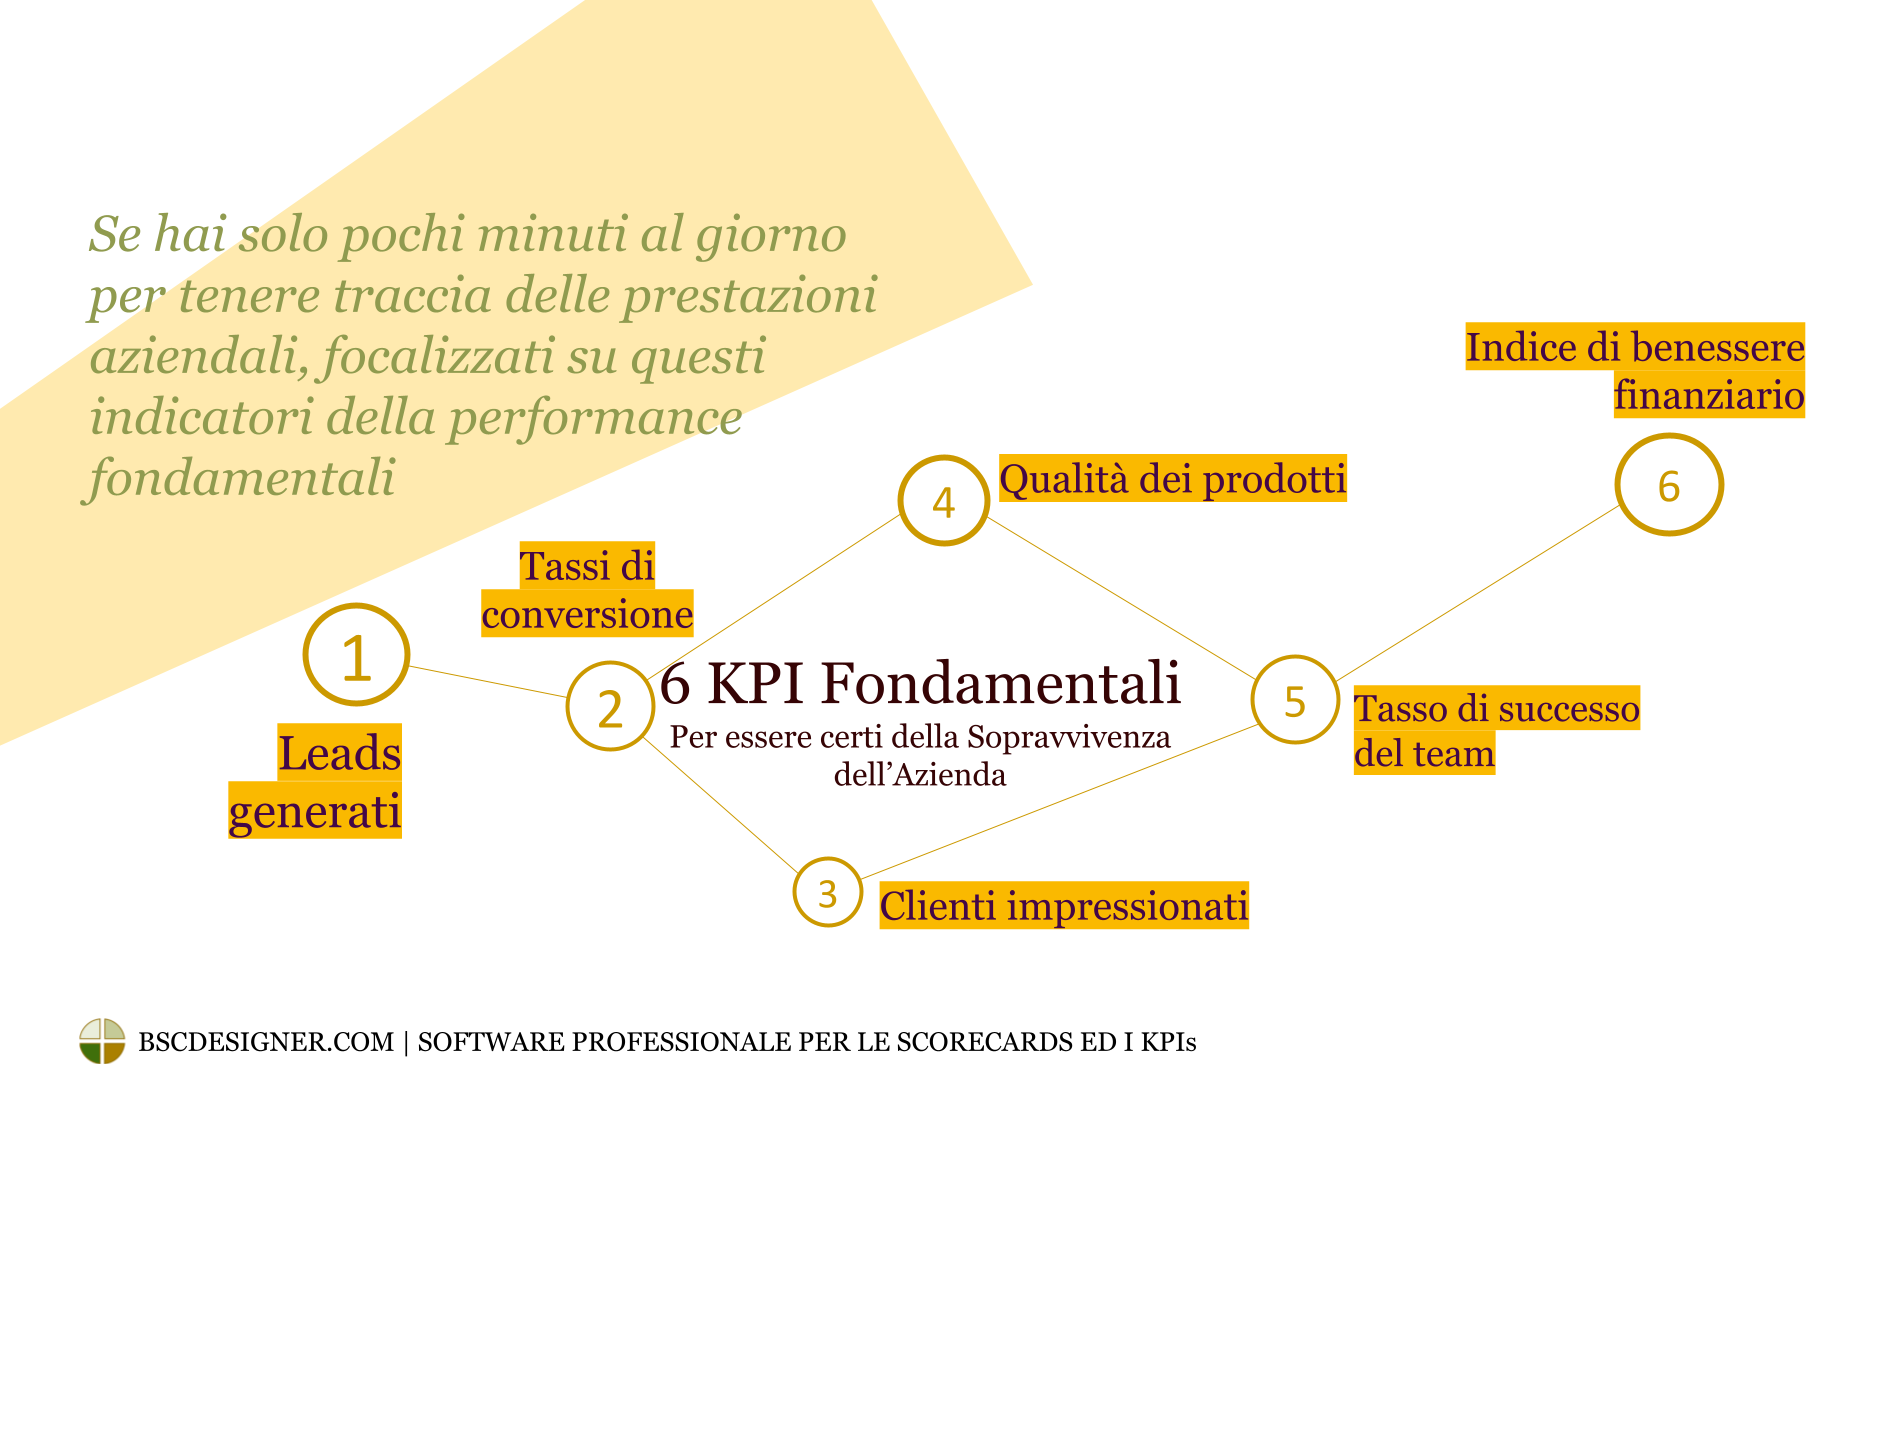 6 KPI essenziali per garantire la sopravvivenza aziendale